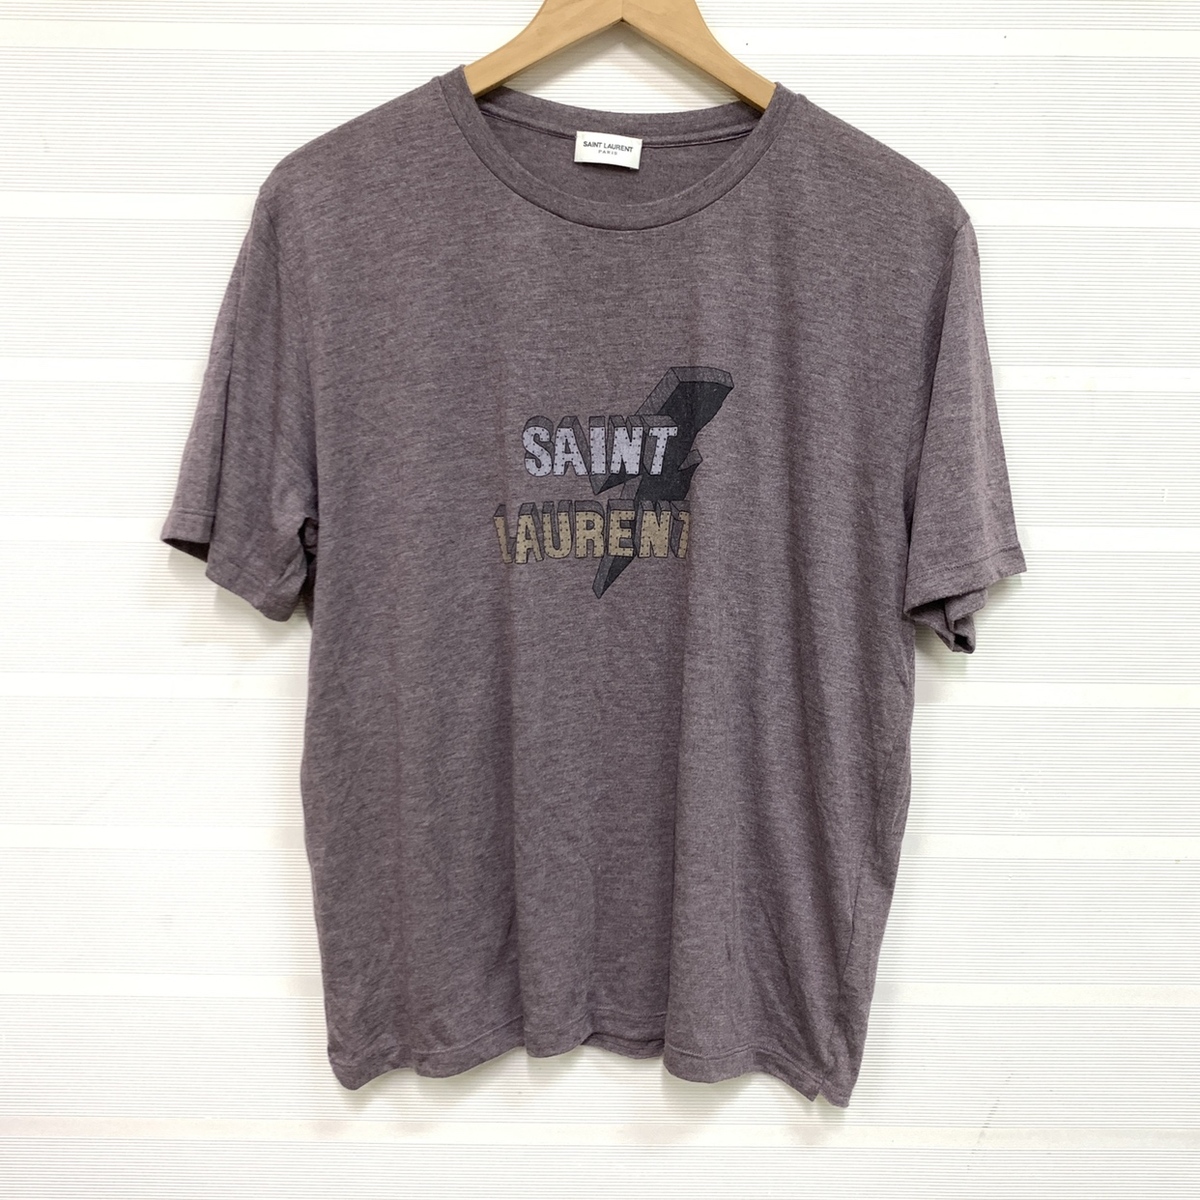 サンローランの正規 17年 500898 パープル系 ロゴデザインTシャツの買取実績です。